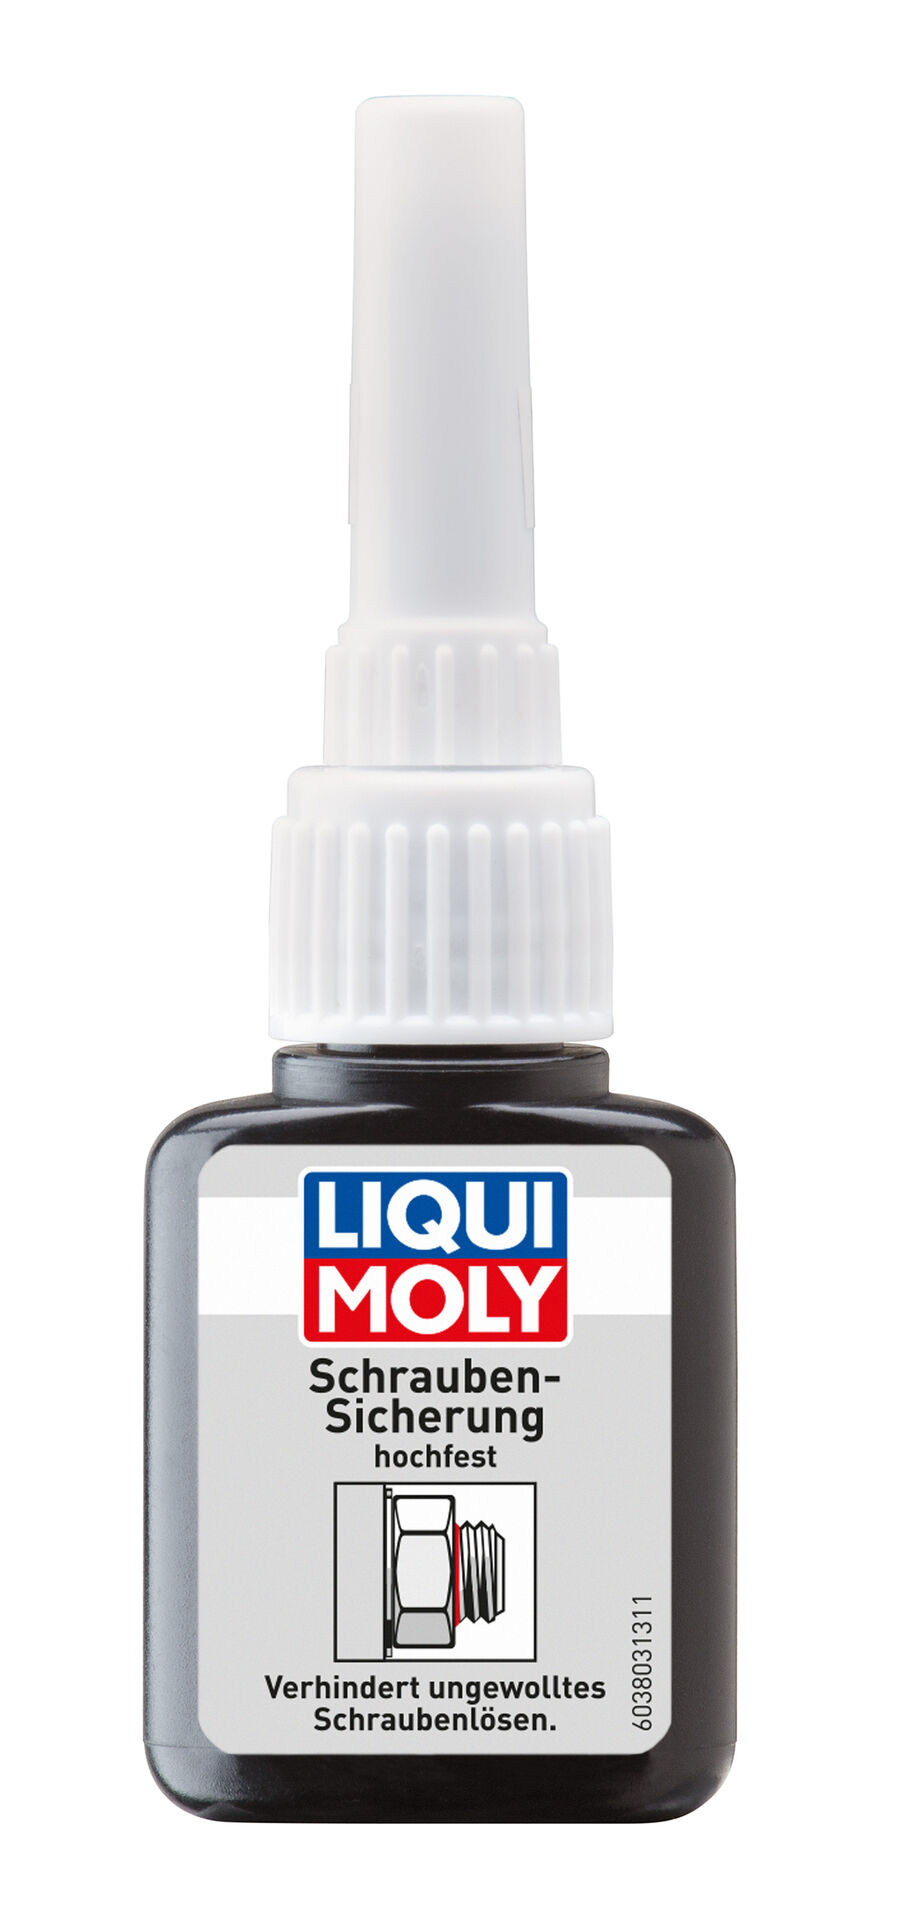 LIQUI MOLY Schrauben-Sicherung hochfest Flasche Kunststoff 10 g